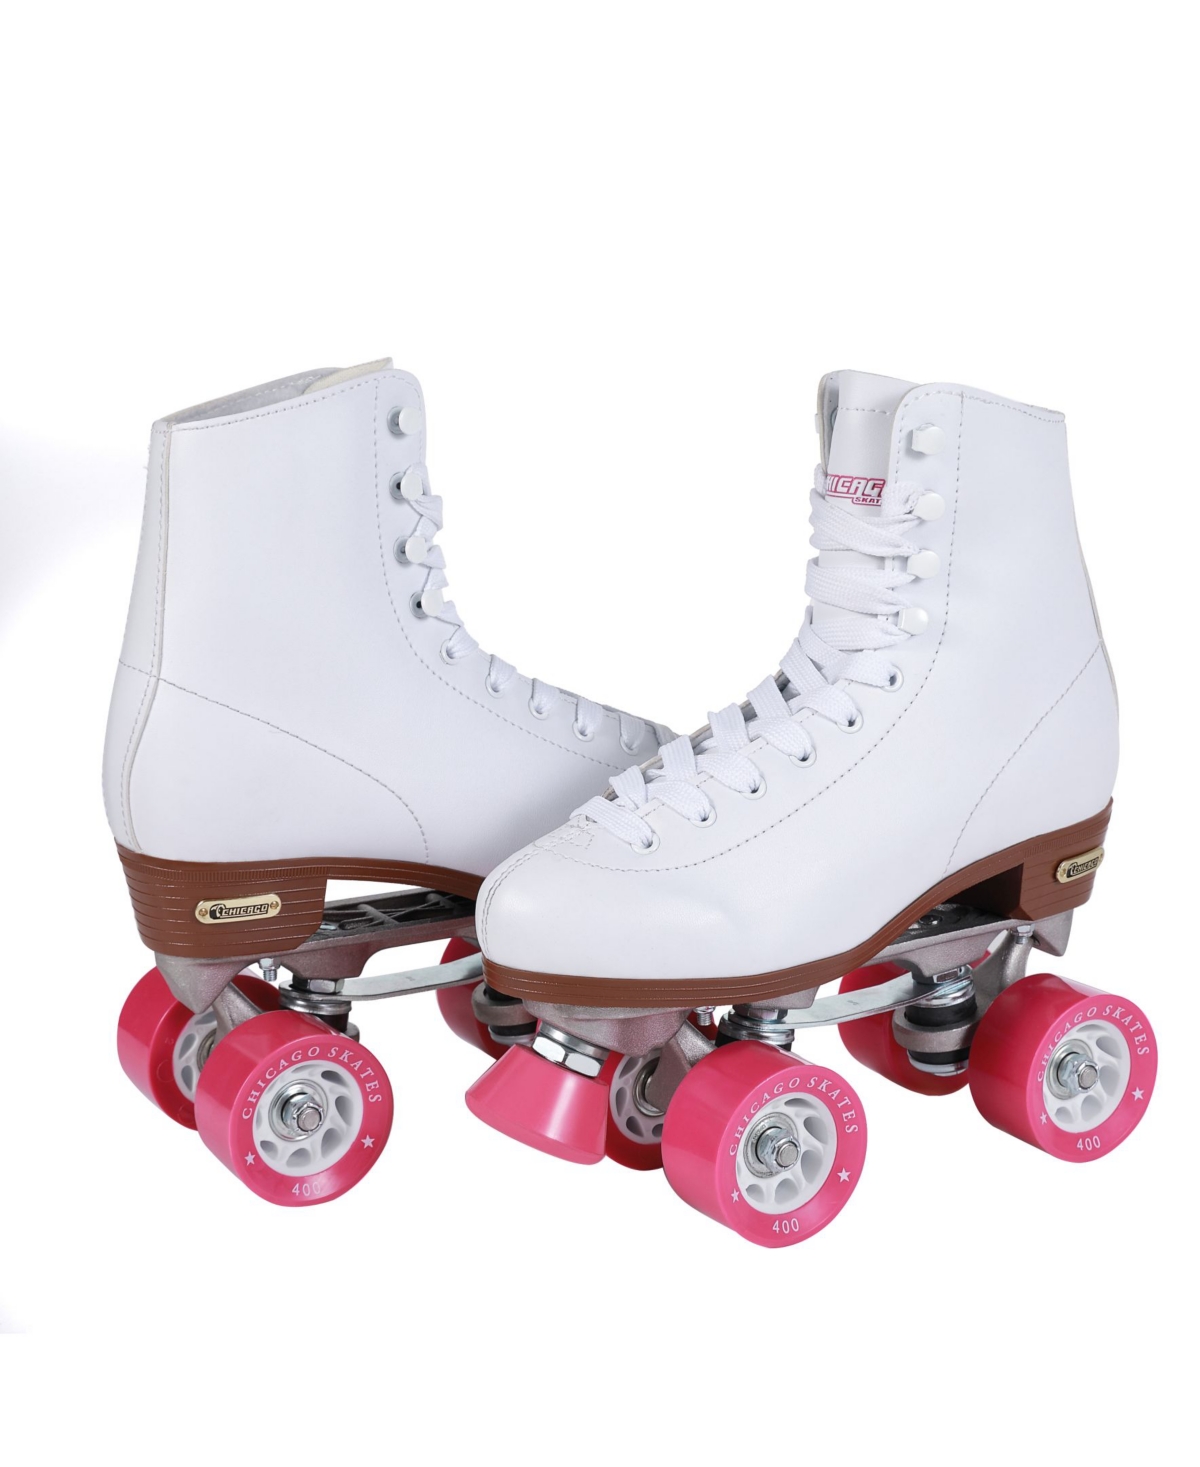 Women's Rink Roller Skates - Size 5 - White